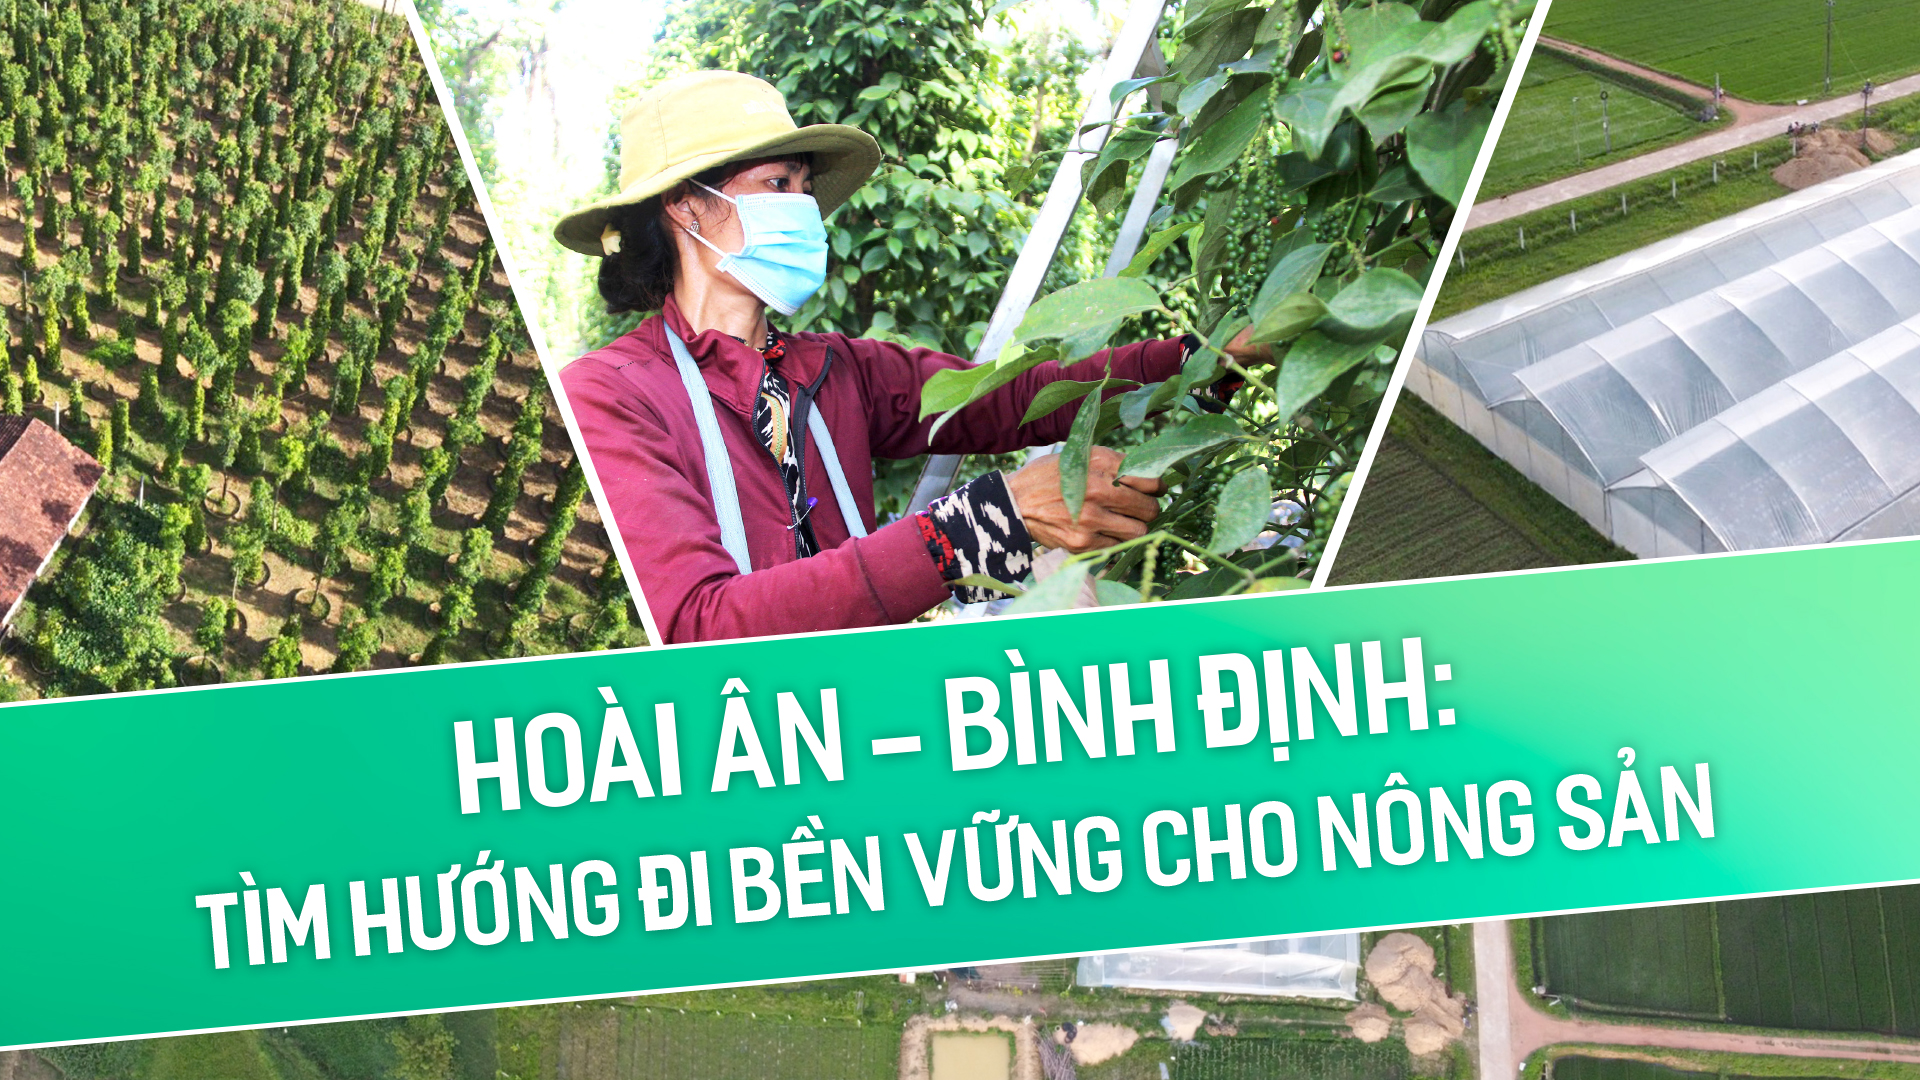 Hoài Ân – Bình Định: Tìm hướng đi bền vững cho nông sản